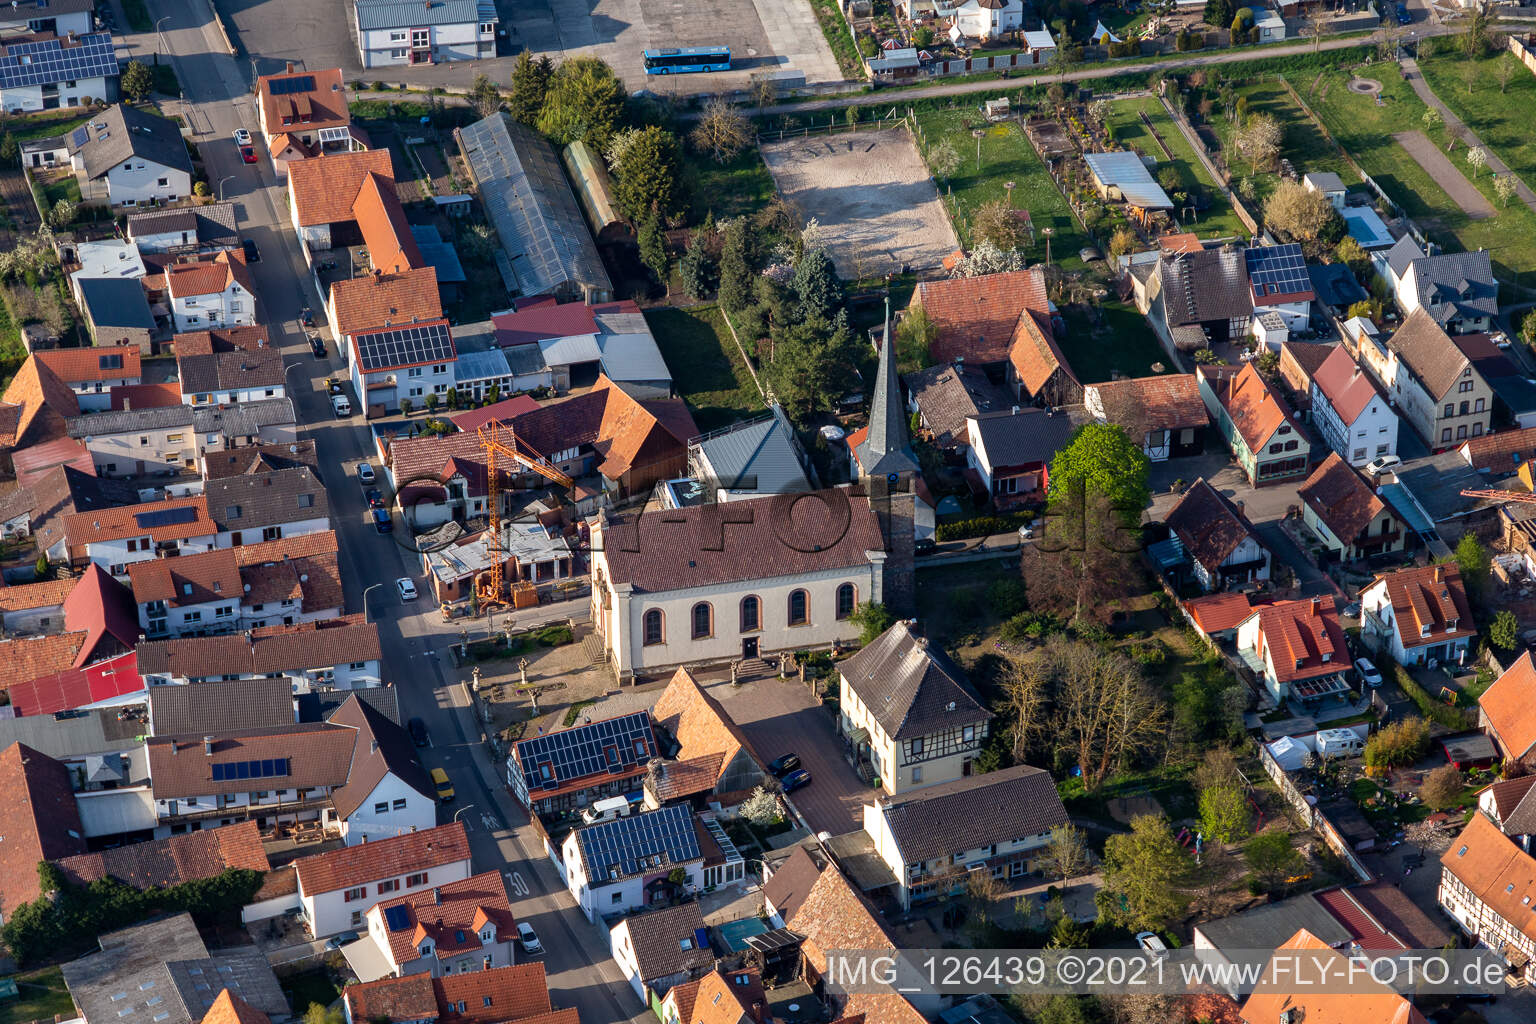 Vue aérienne de Bâtiment d'église au centre du village à Knittelsheim dans le département Rhénanie-Palatinat, Allemagne